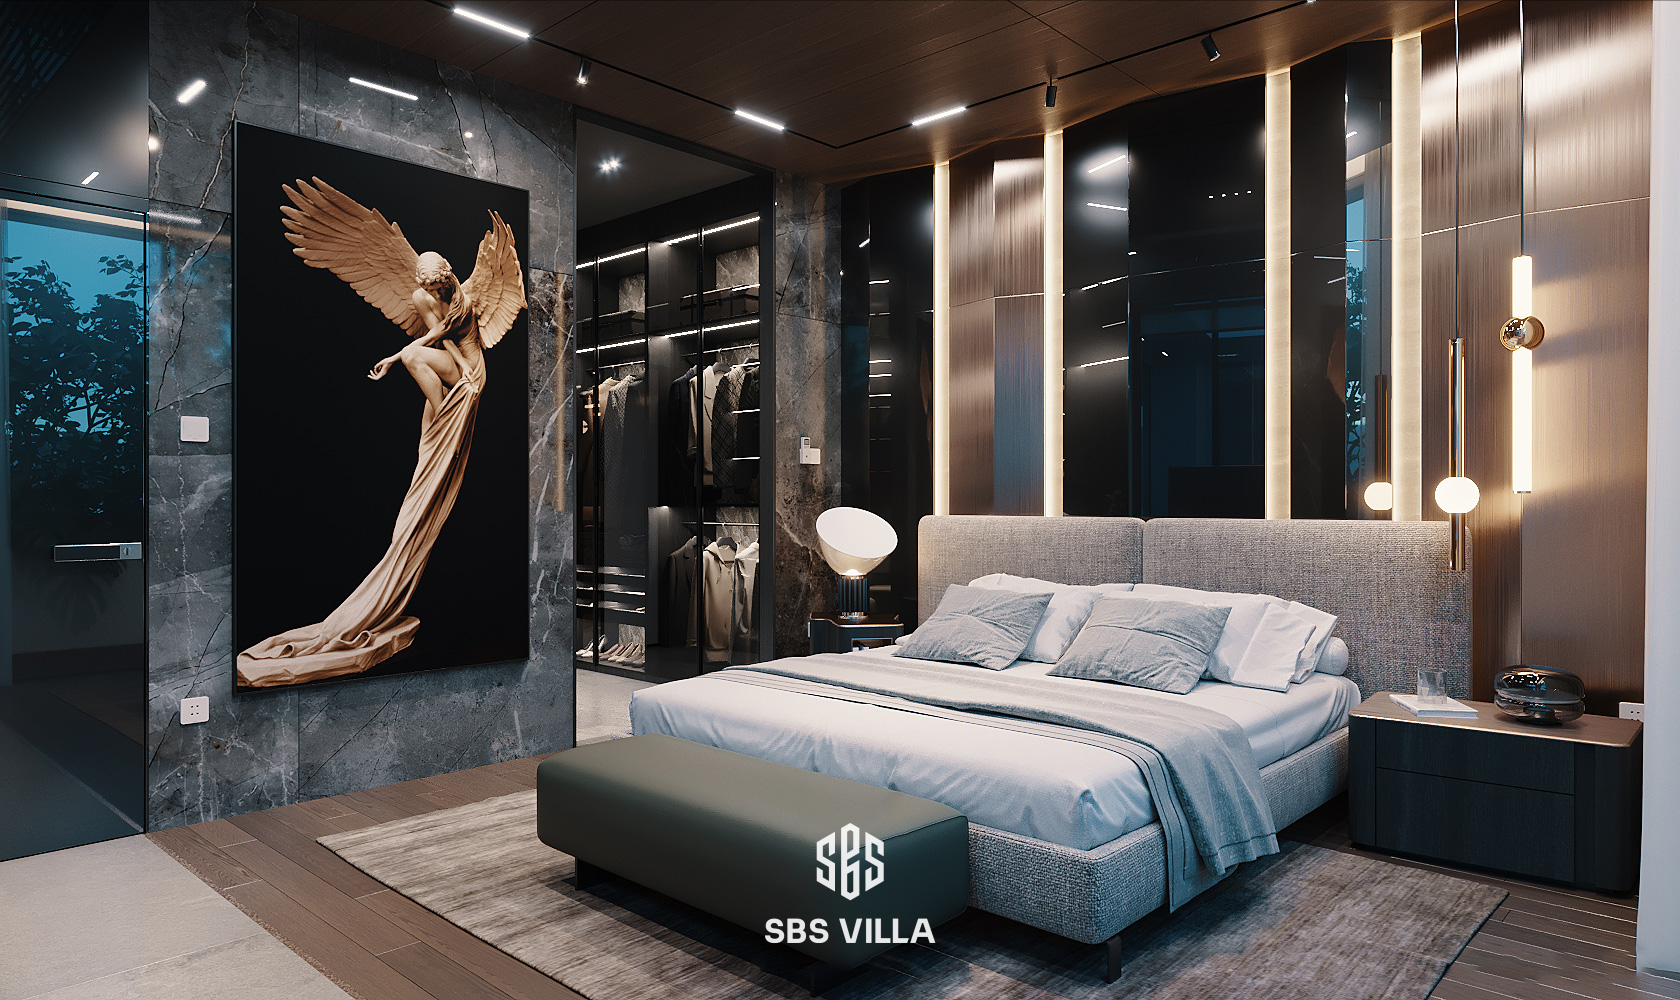 Thiết kế phòng ngủ nổi bật với các đường nét tối giản. Lấy sắc vàng sang trọng và ấm cúng từ hệ thống ánh đèn cao cấp và bức tranh nghệ thuật đầy tính thẩm mỹ tạo nên điểm nhấn cho căn phòng